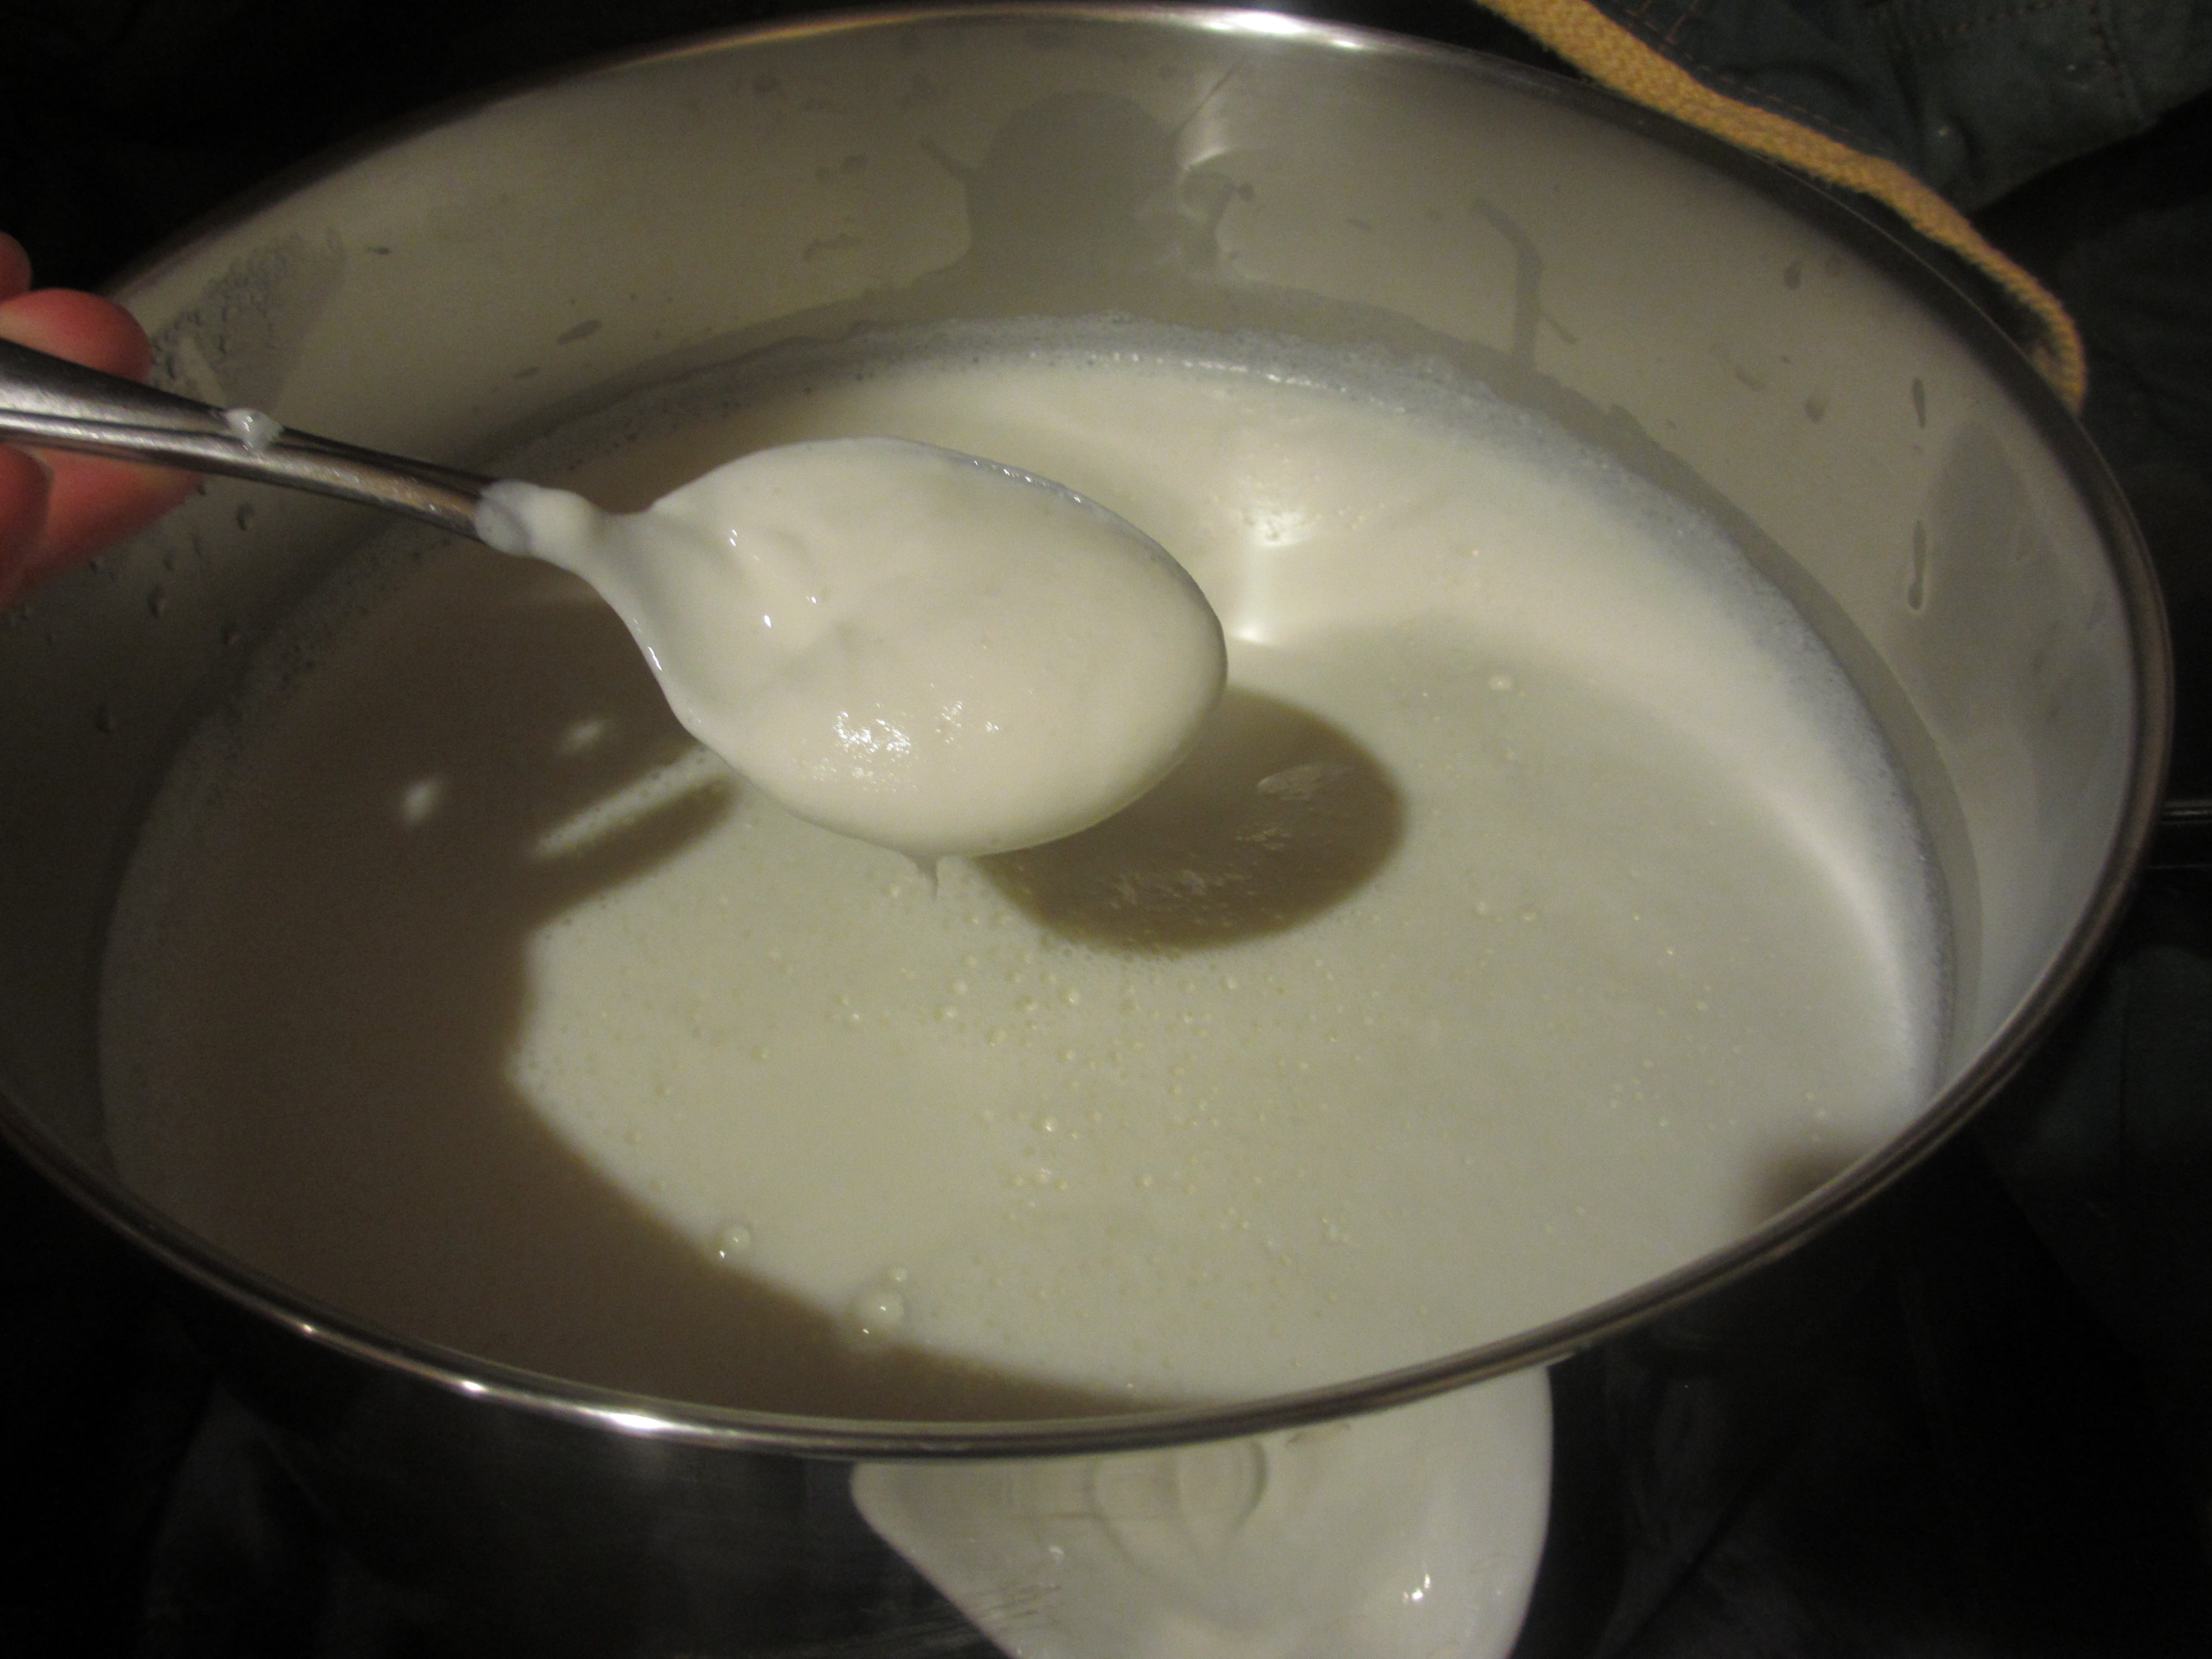 Adding yogurt and milk mixture to the heated milk